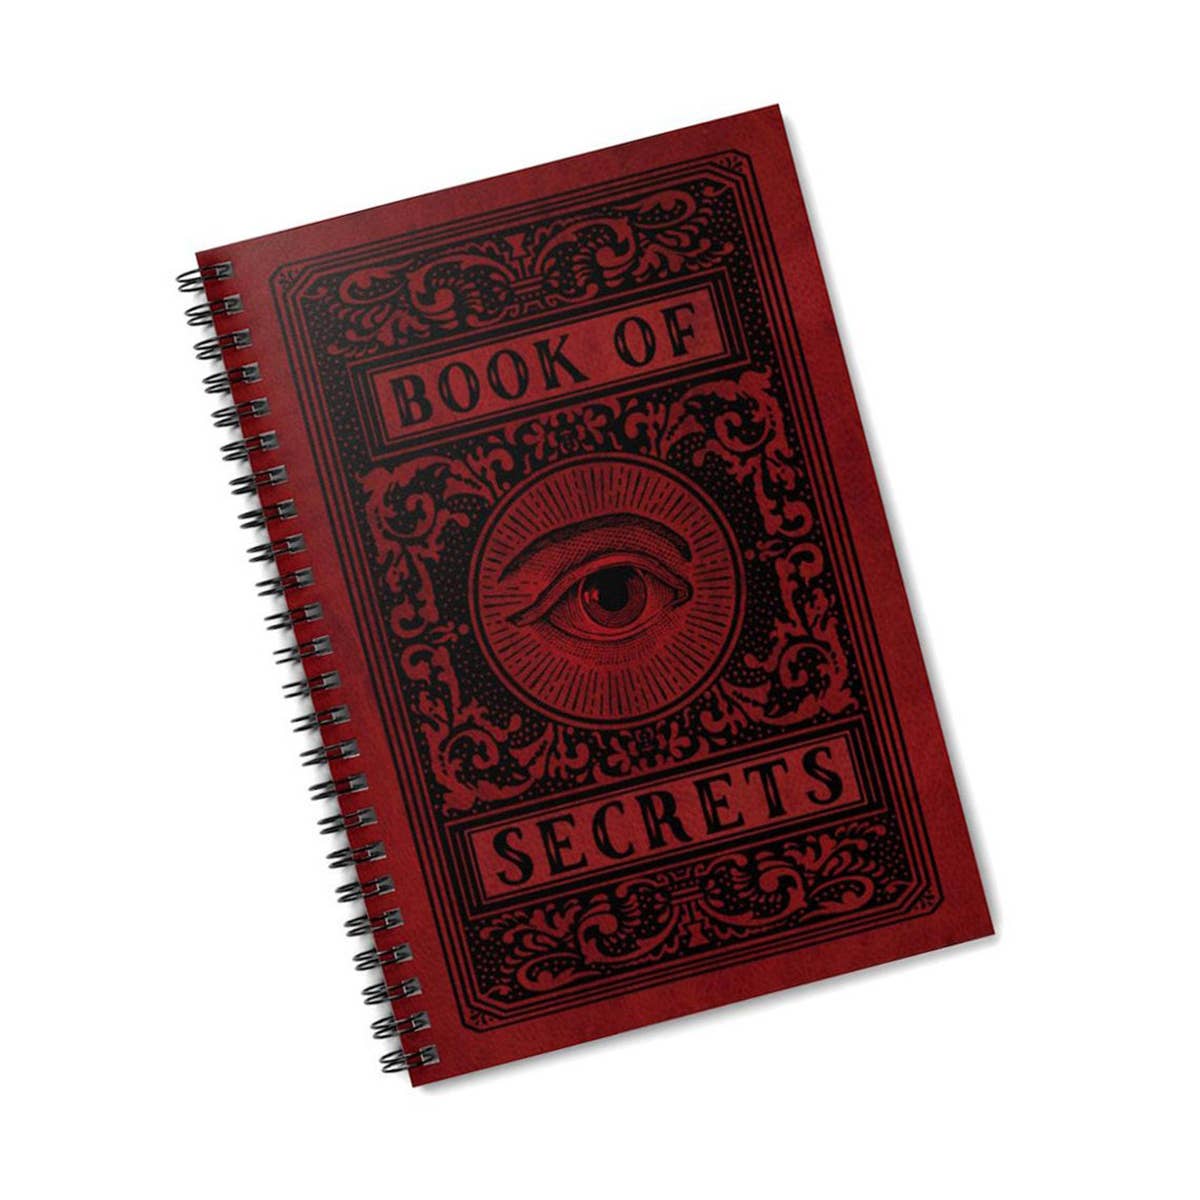 Book of Secrets Spiral Notebook | 8.5" x 6" x 0.6"